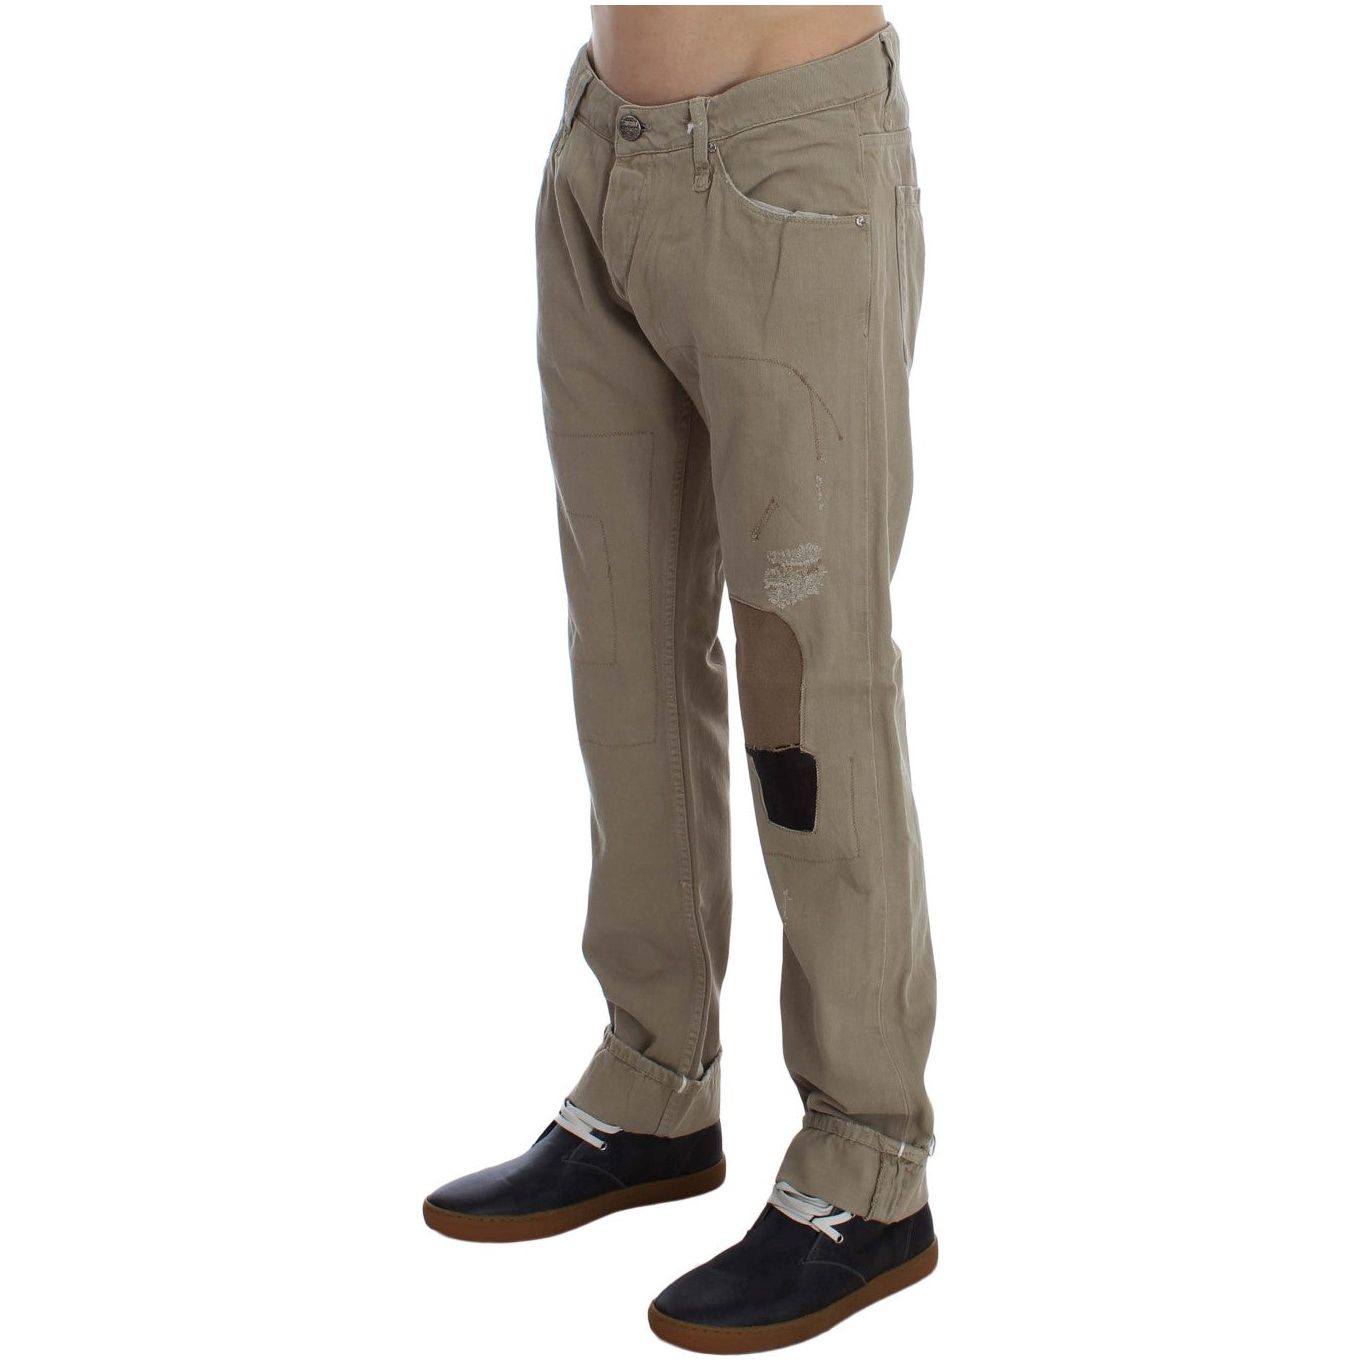 Jeans & Pants Beige Straight Fit Cotton Jeans for Men Acht